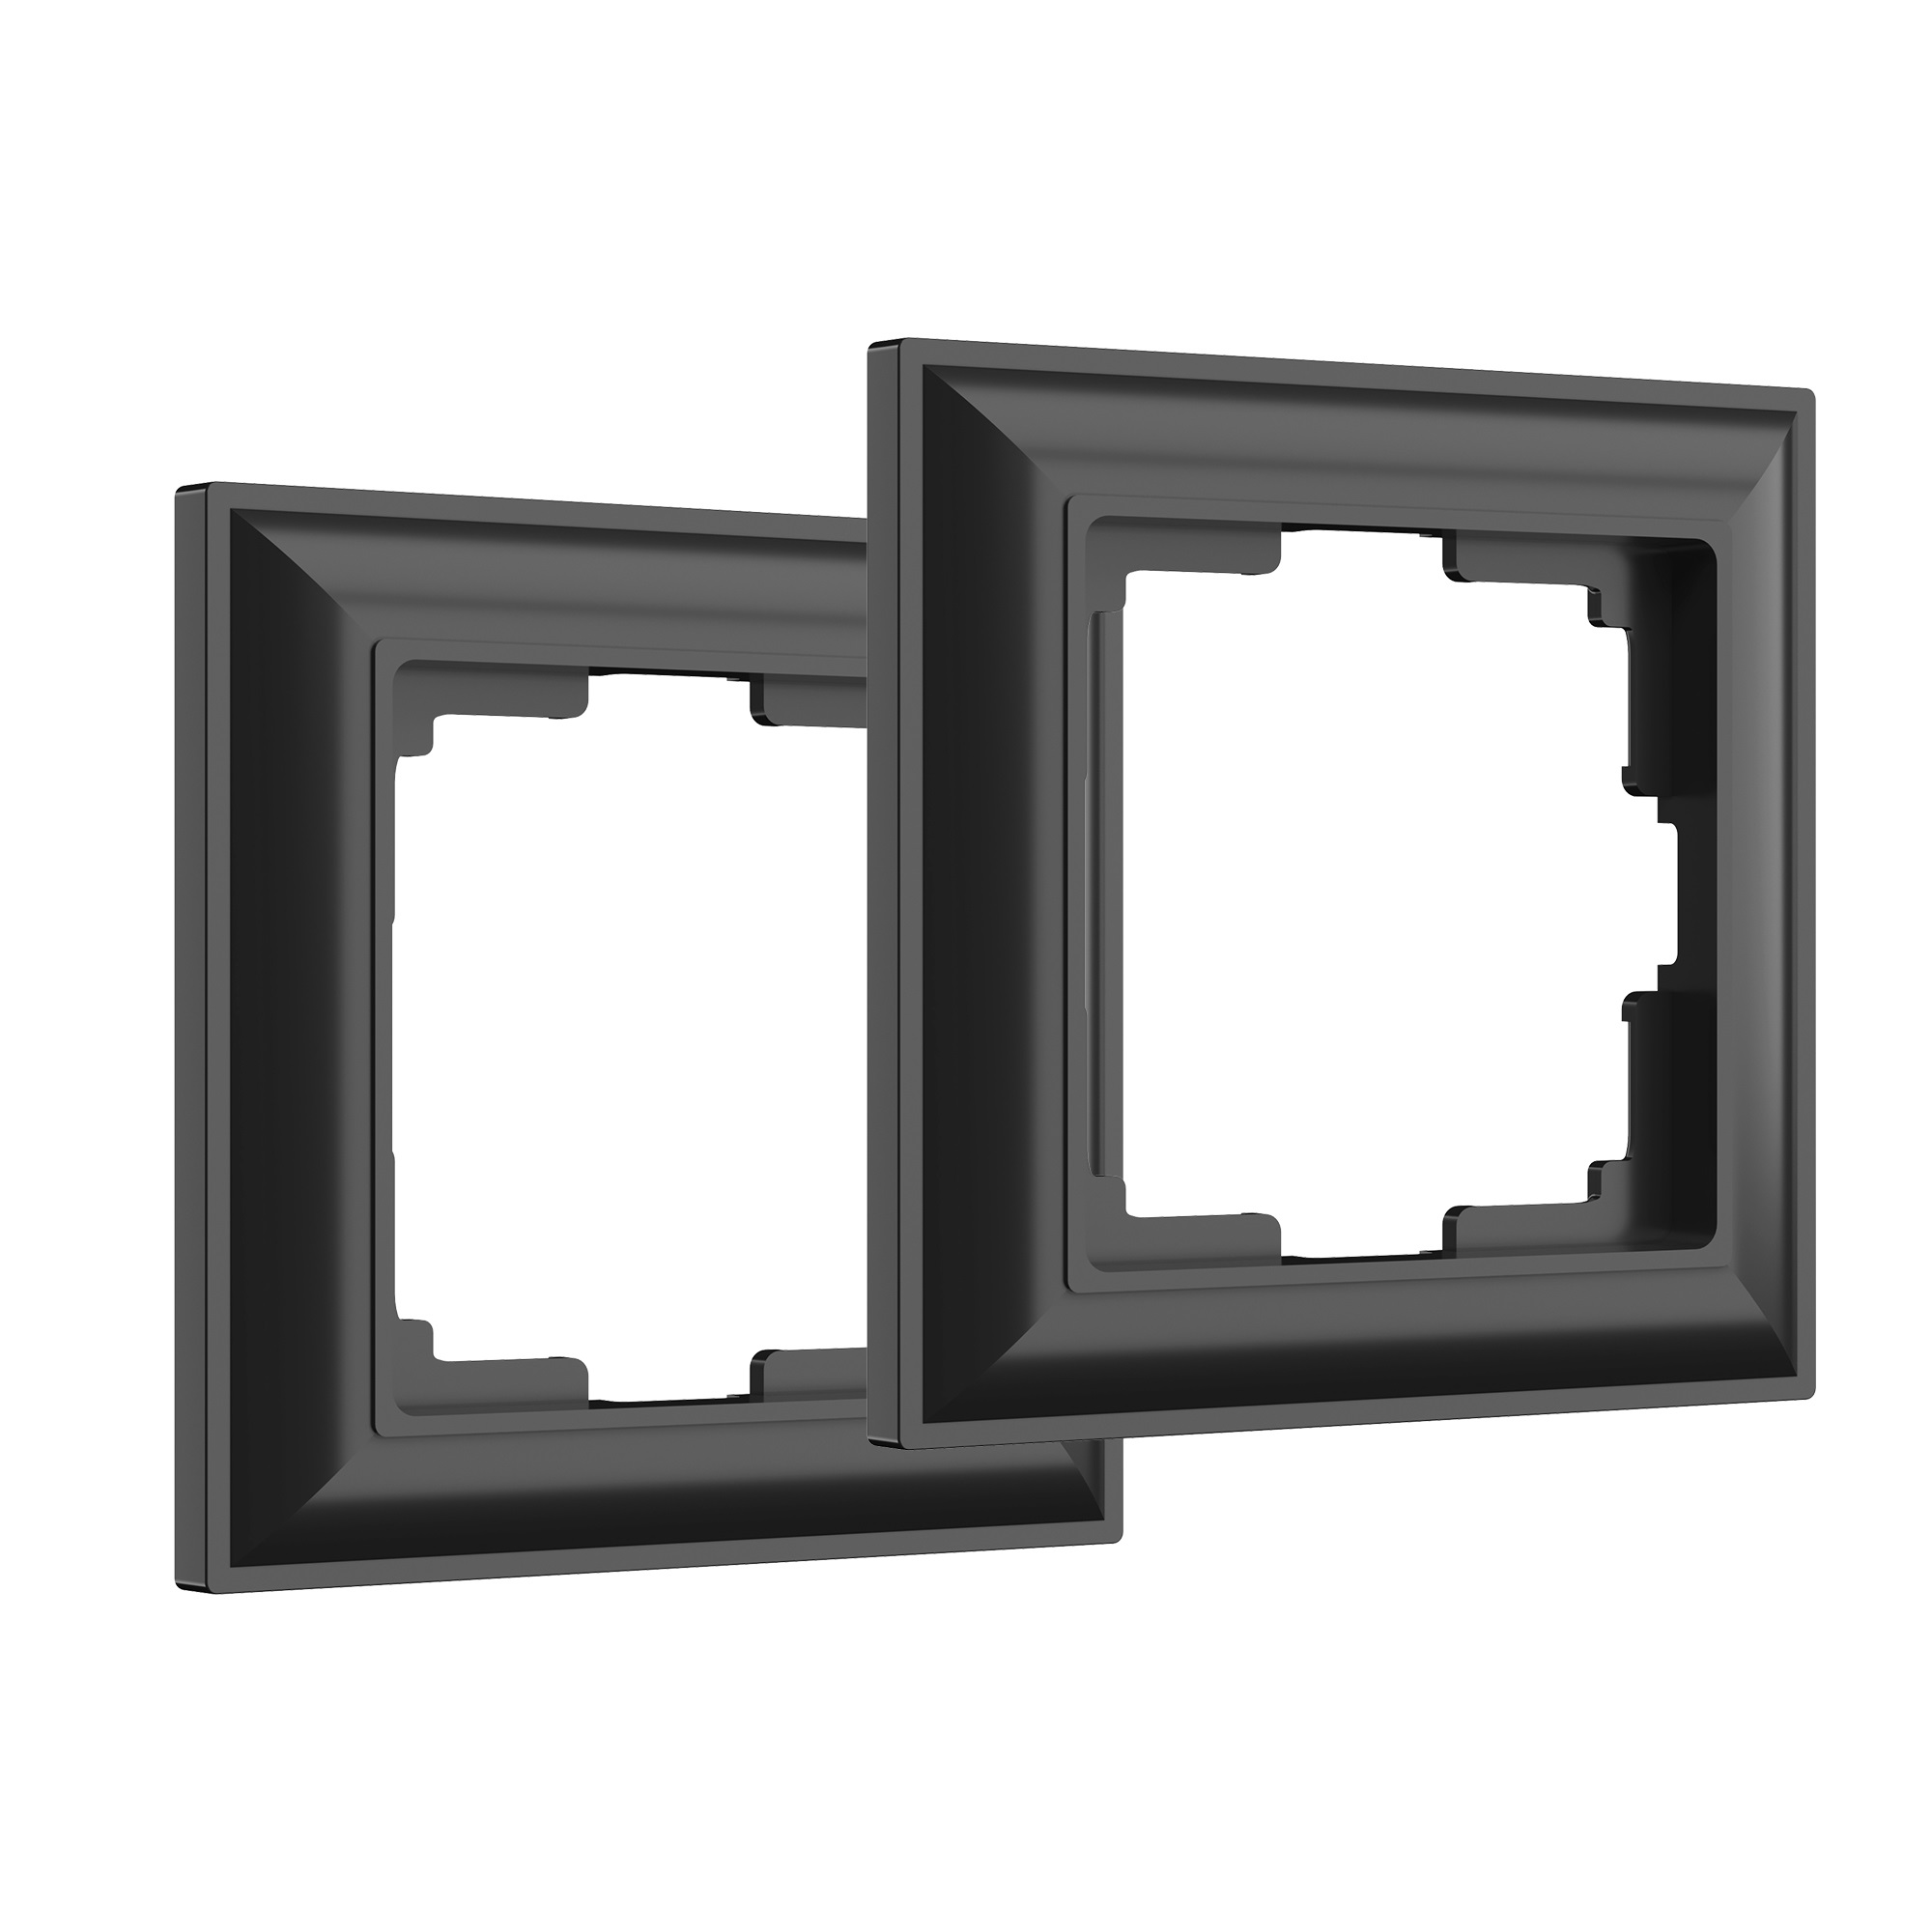 Рамка для розетки/выключателя на 1 пост (комплект 2 шт.) Werkel Fiore W0012208 черный рамка на 1 пост werkel metallic w0011602 4690389159022